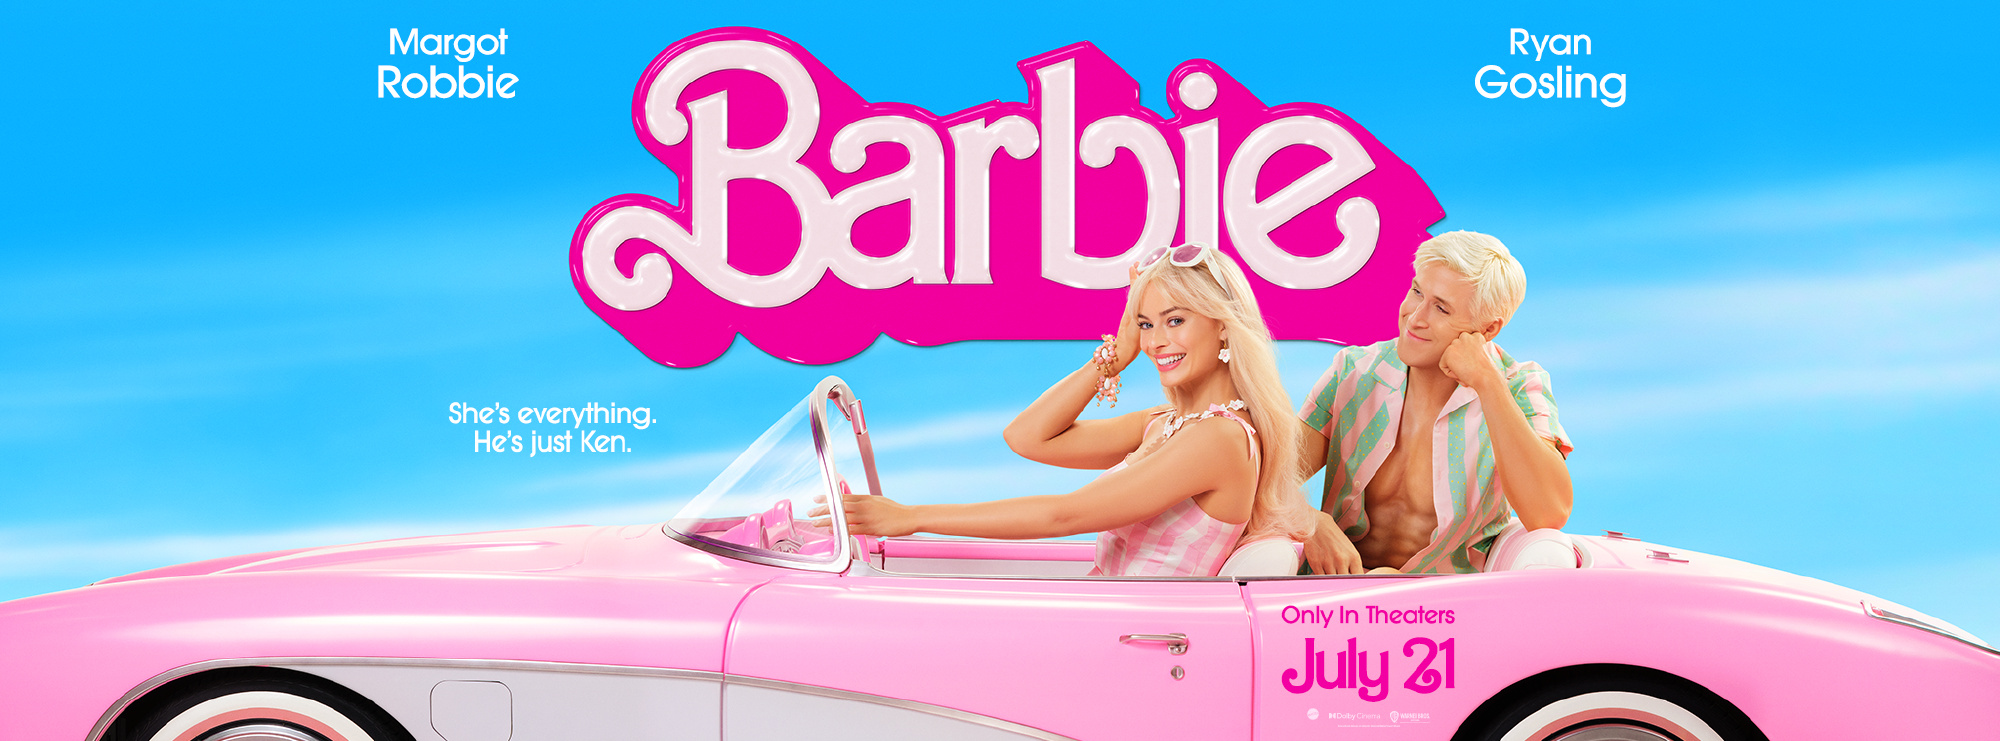 《芭比》新预告释出 7月21日北美上映 中国模特网